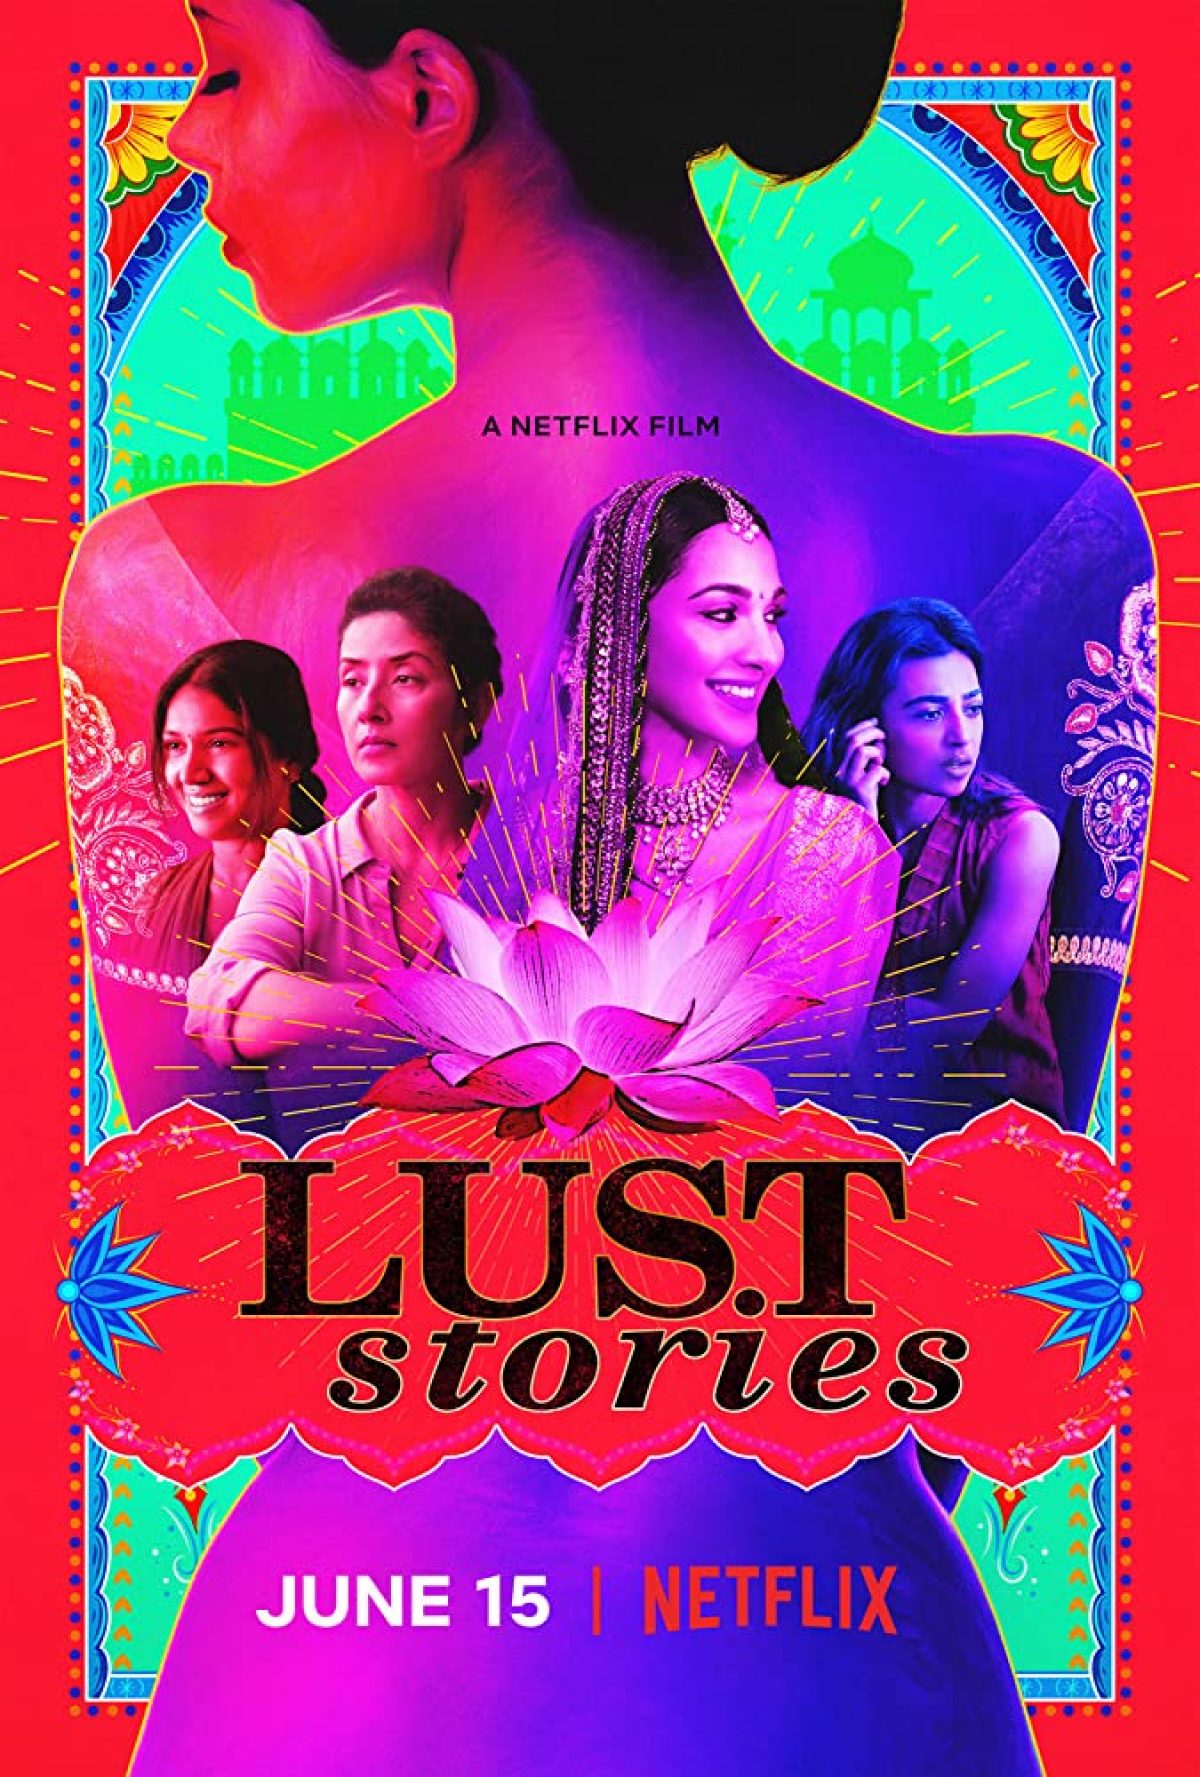 ดูหนังออนไลน์ Lust Stories – Netflix (2018) เรื่องรัก เรื่องใคร่